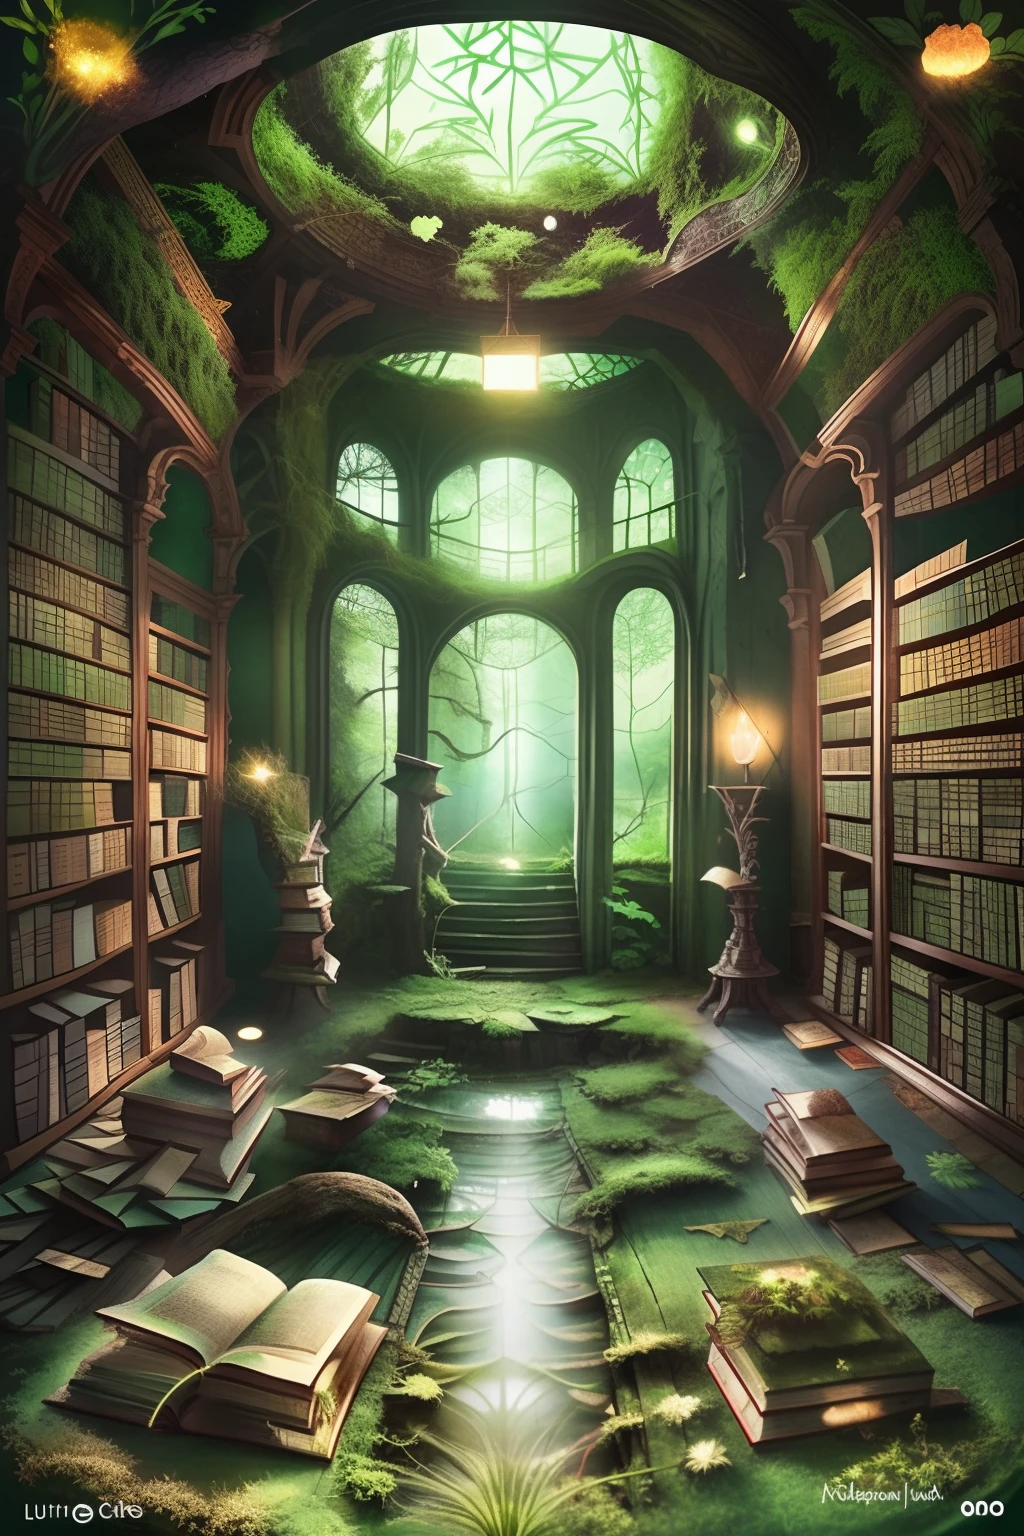 廃墟となった図書館の魅惑的な傑作, 床の中央には森の緑の苔の層で覆われた神話の本の非常に詳細なイラストがあります, フィルターを通した柔らかな光に照らされた.